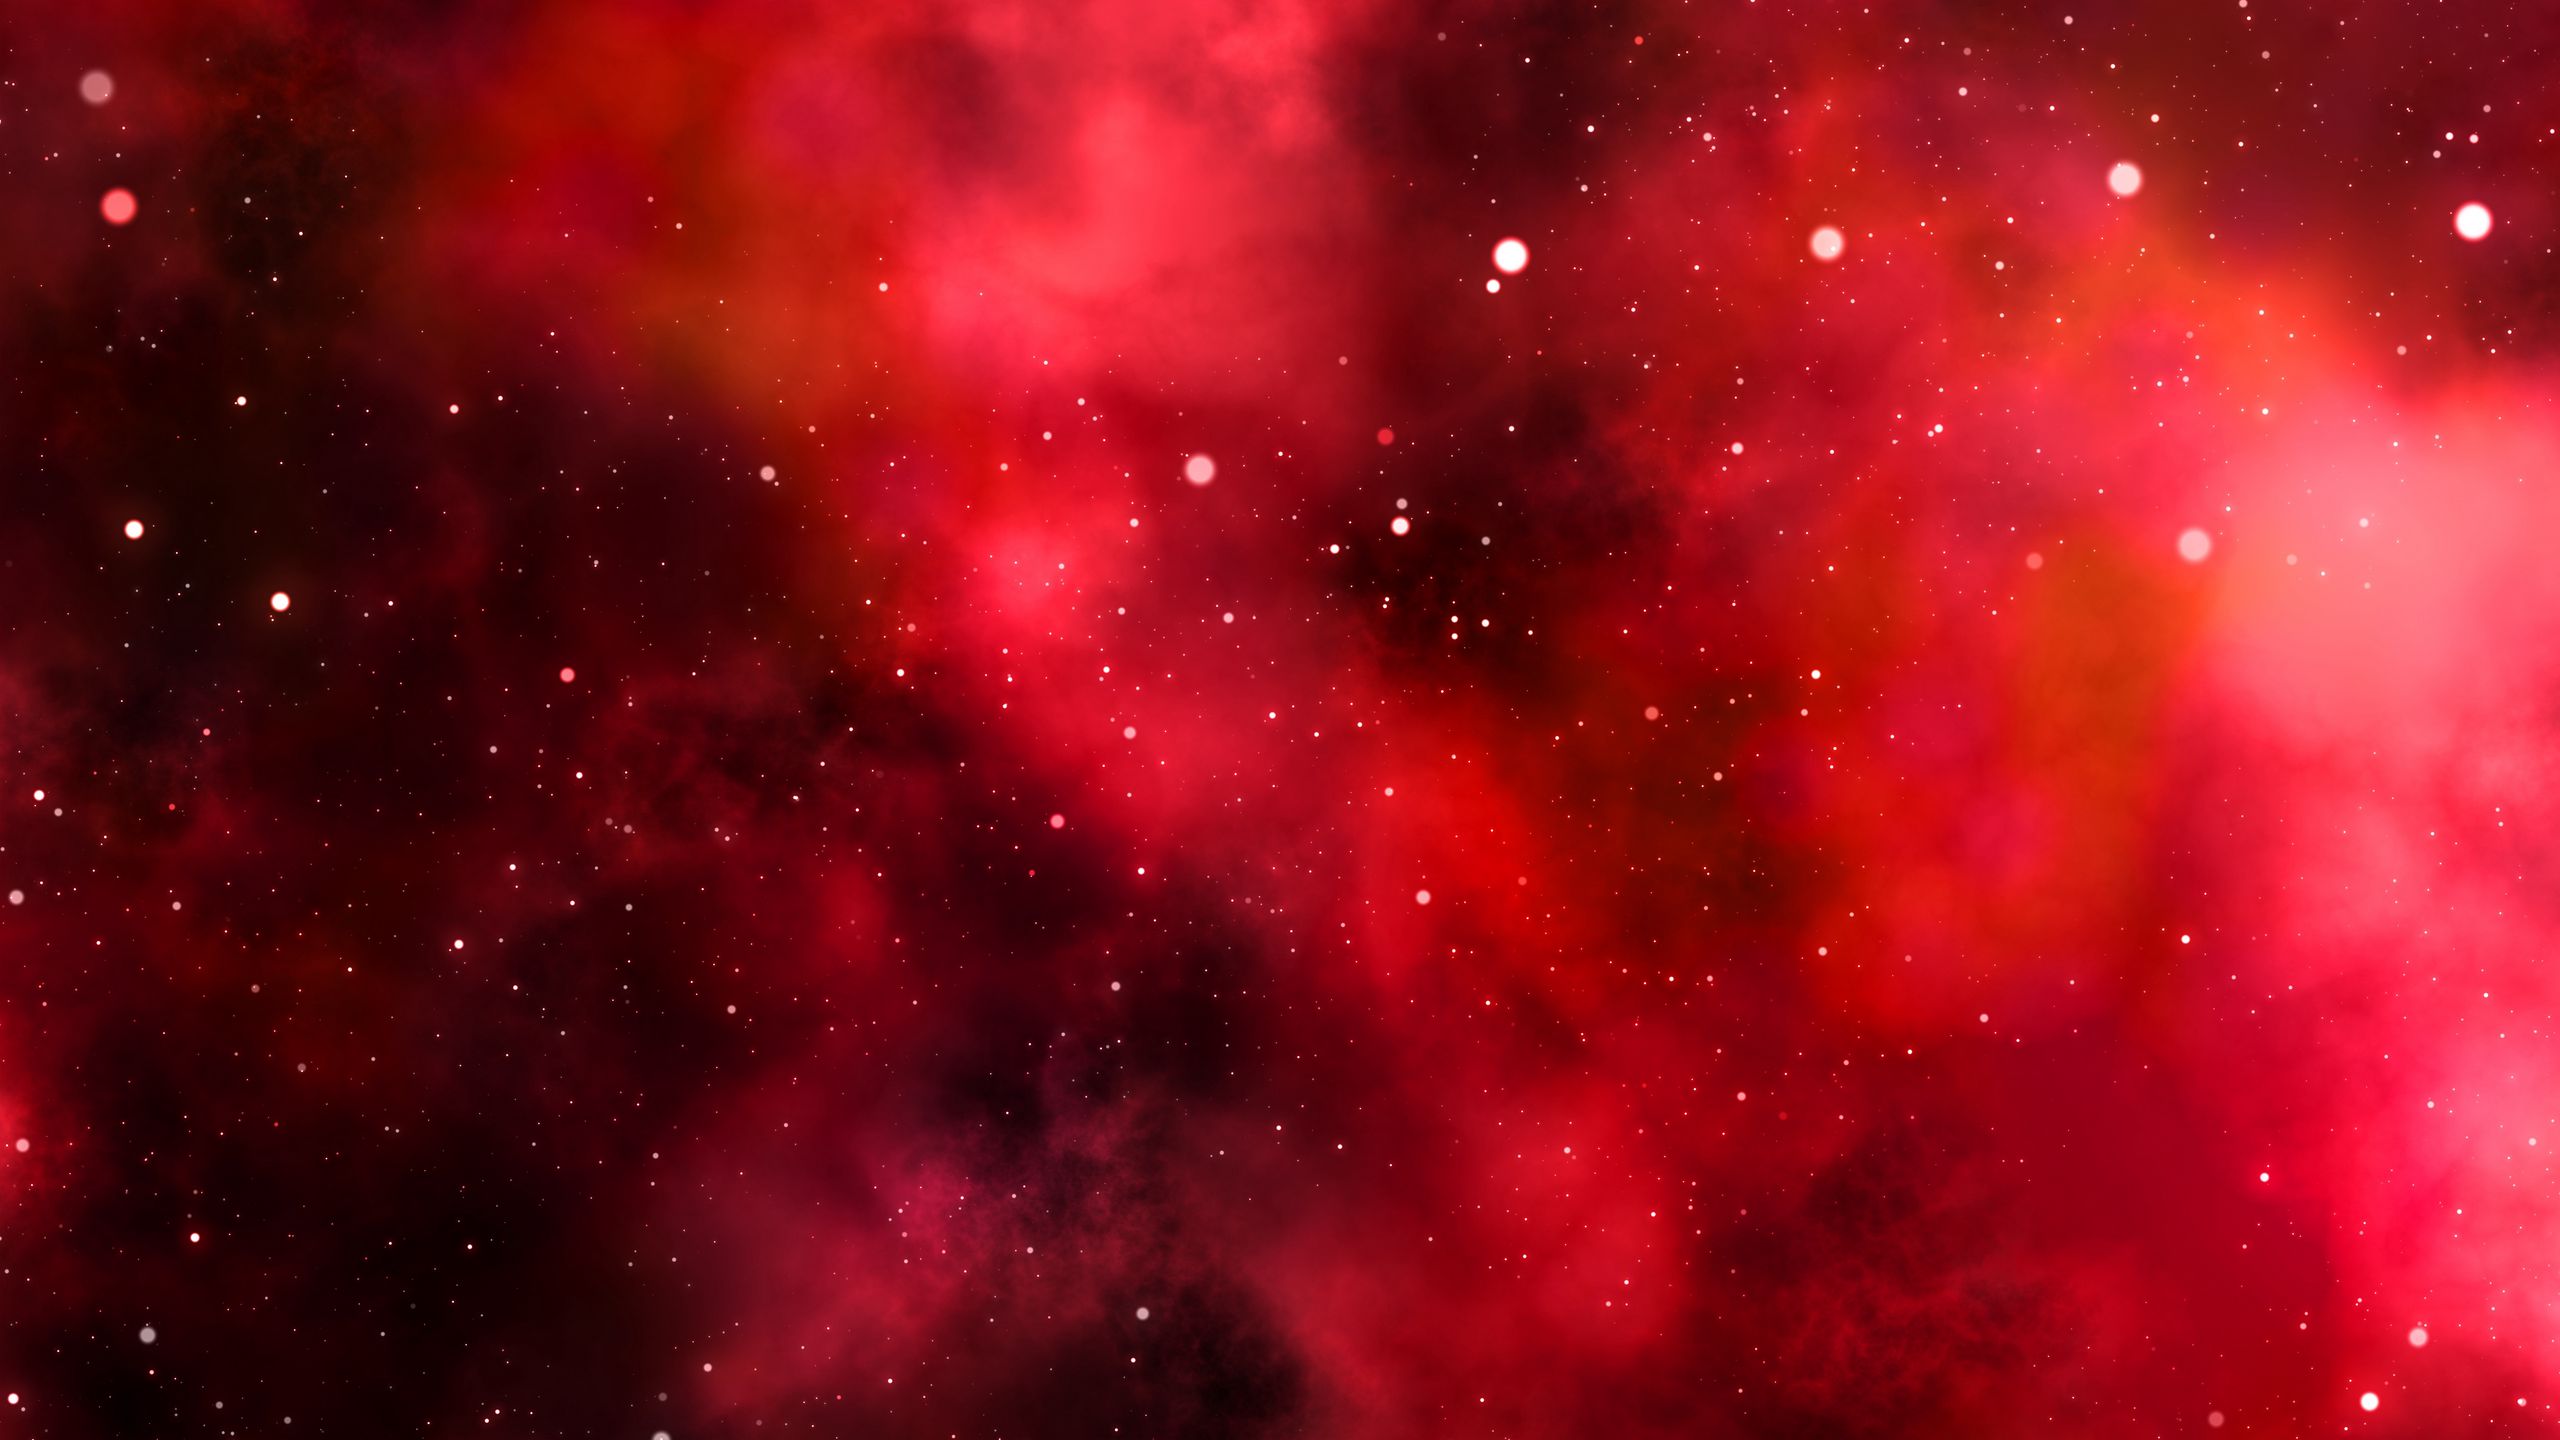 Vũ trụ đỏ là một chủ đề luôn được yêu thích trên thế giới. Hình nền vũ trụ đỏ sẽ đưa bạn vào hành trình phiêu lưu qua không gian rộng lớn, để khám phá những bí ẩn đang chờ đợi.